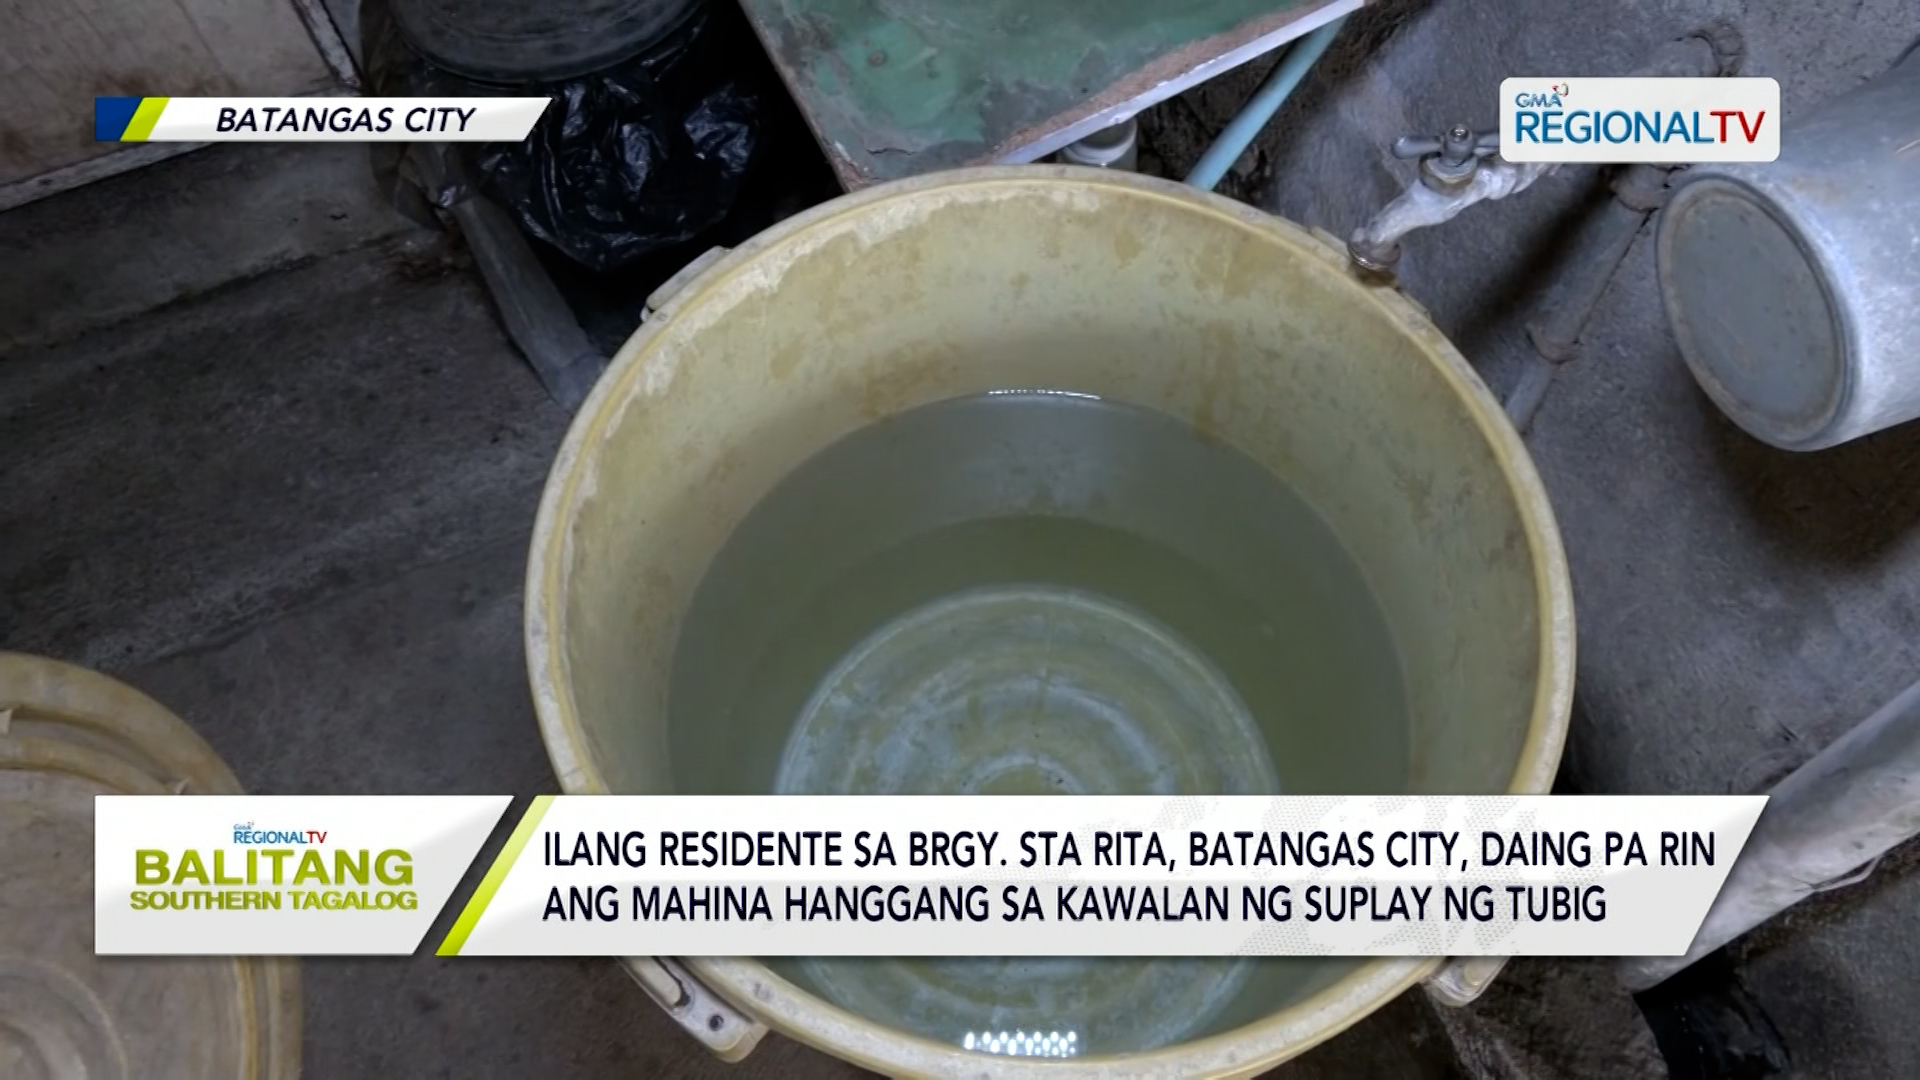 Mahinang suplay ng tubig, daing pa rin ng ilang residente sa Batangas City